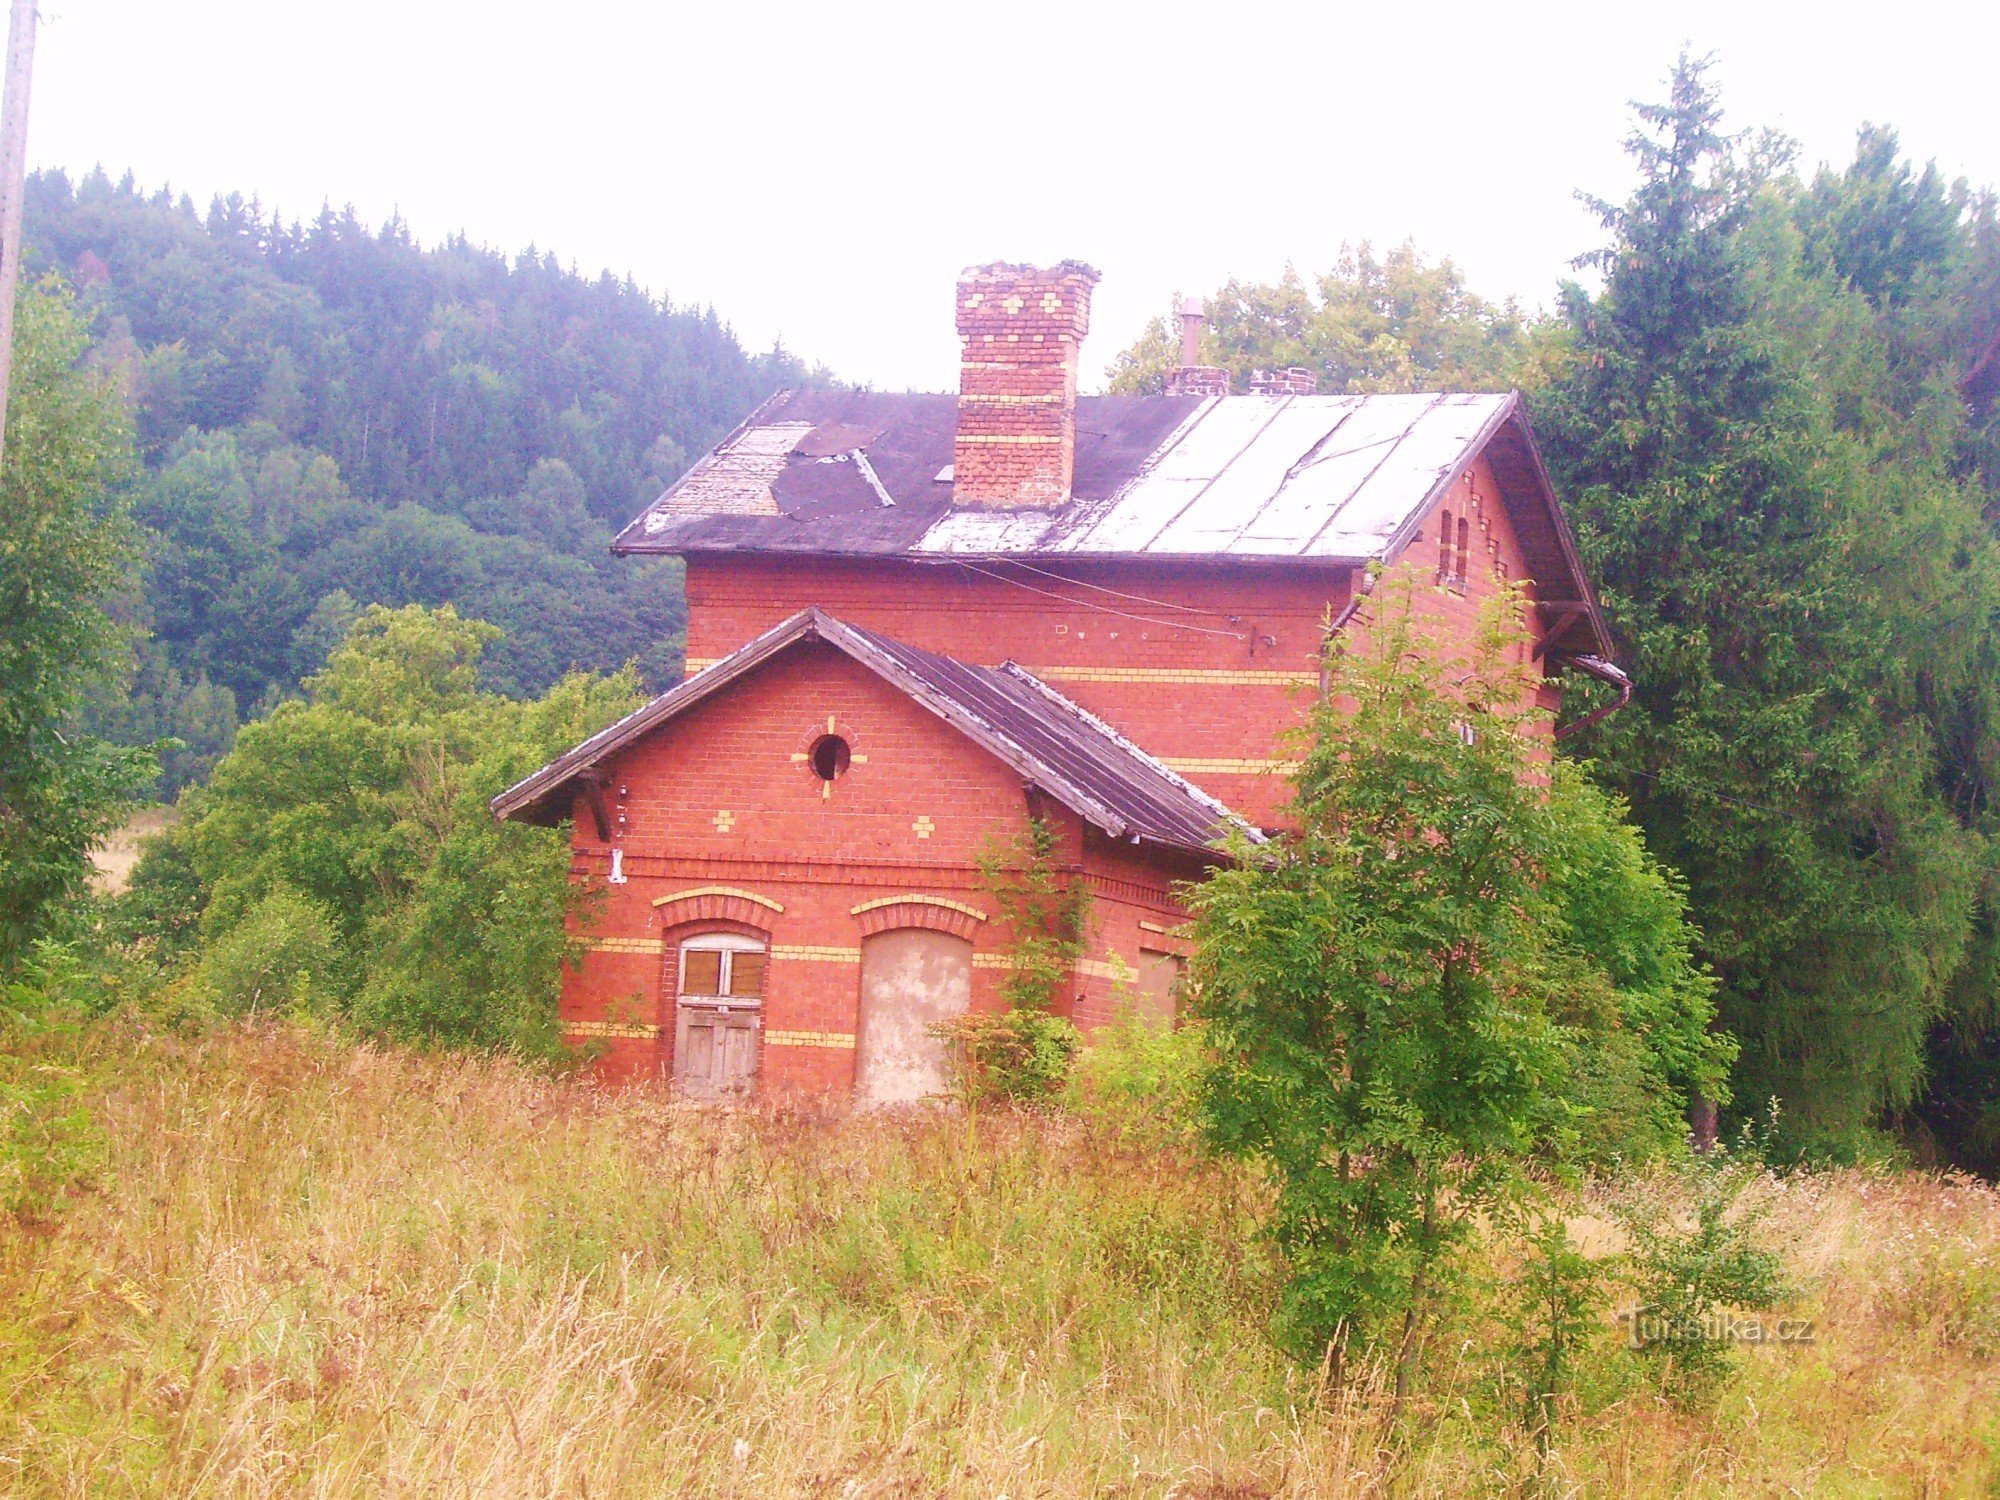 Okrzeszyn - ex stazione ferroviaria